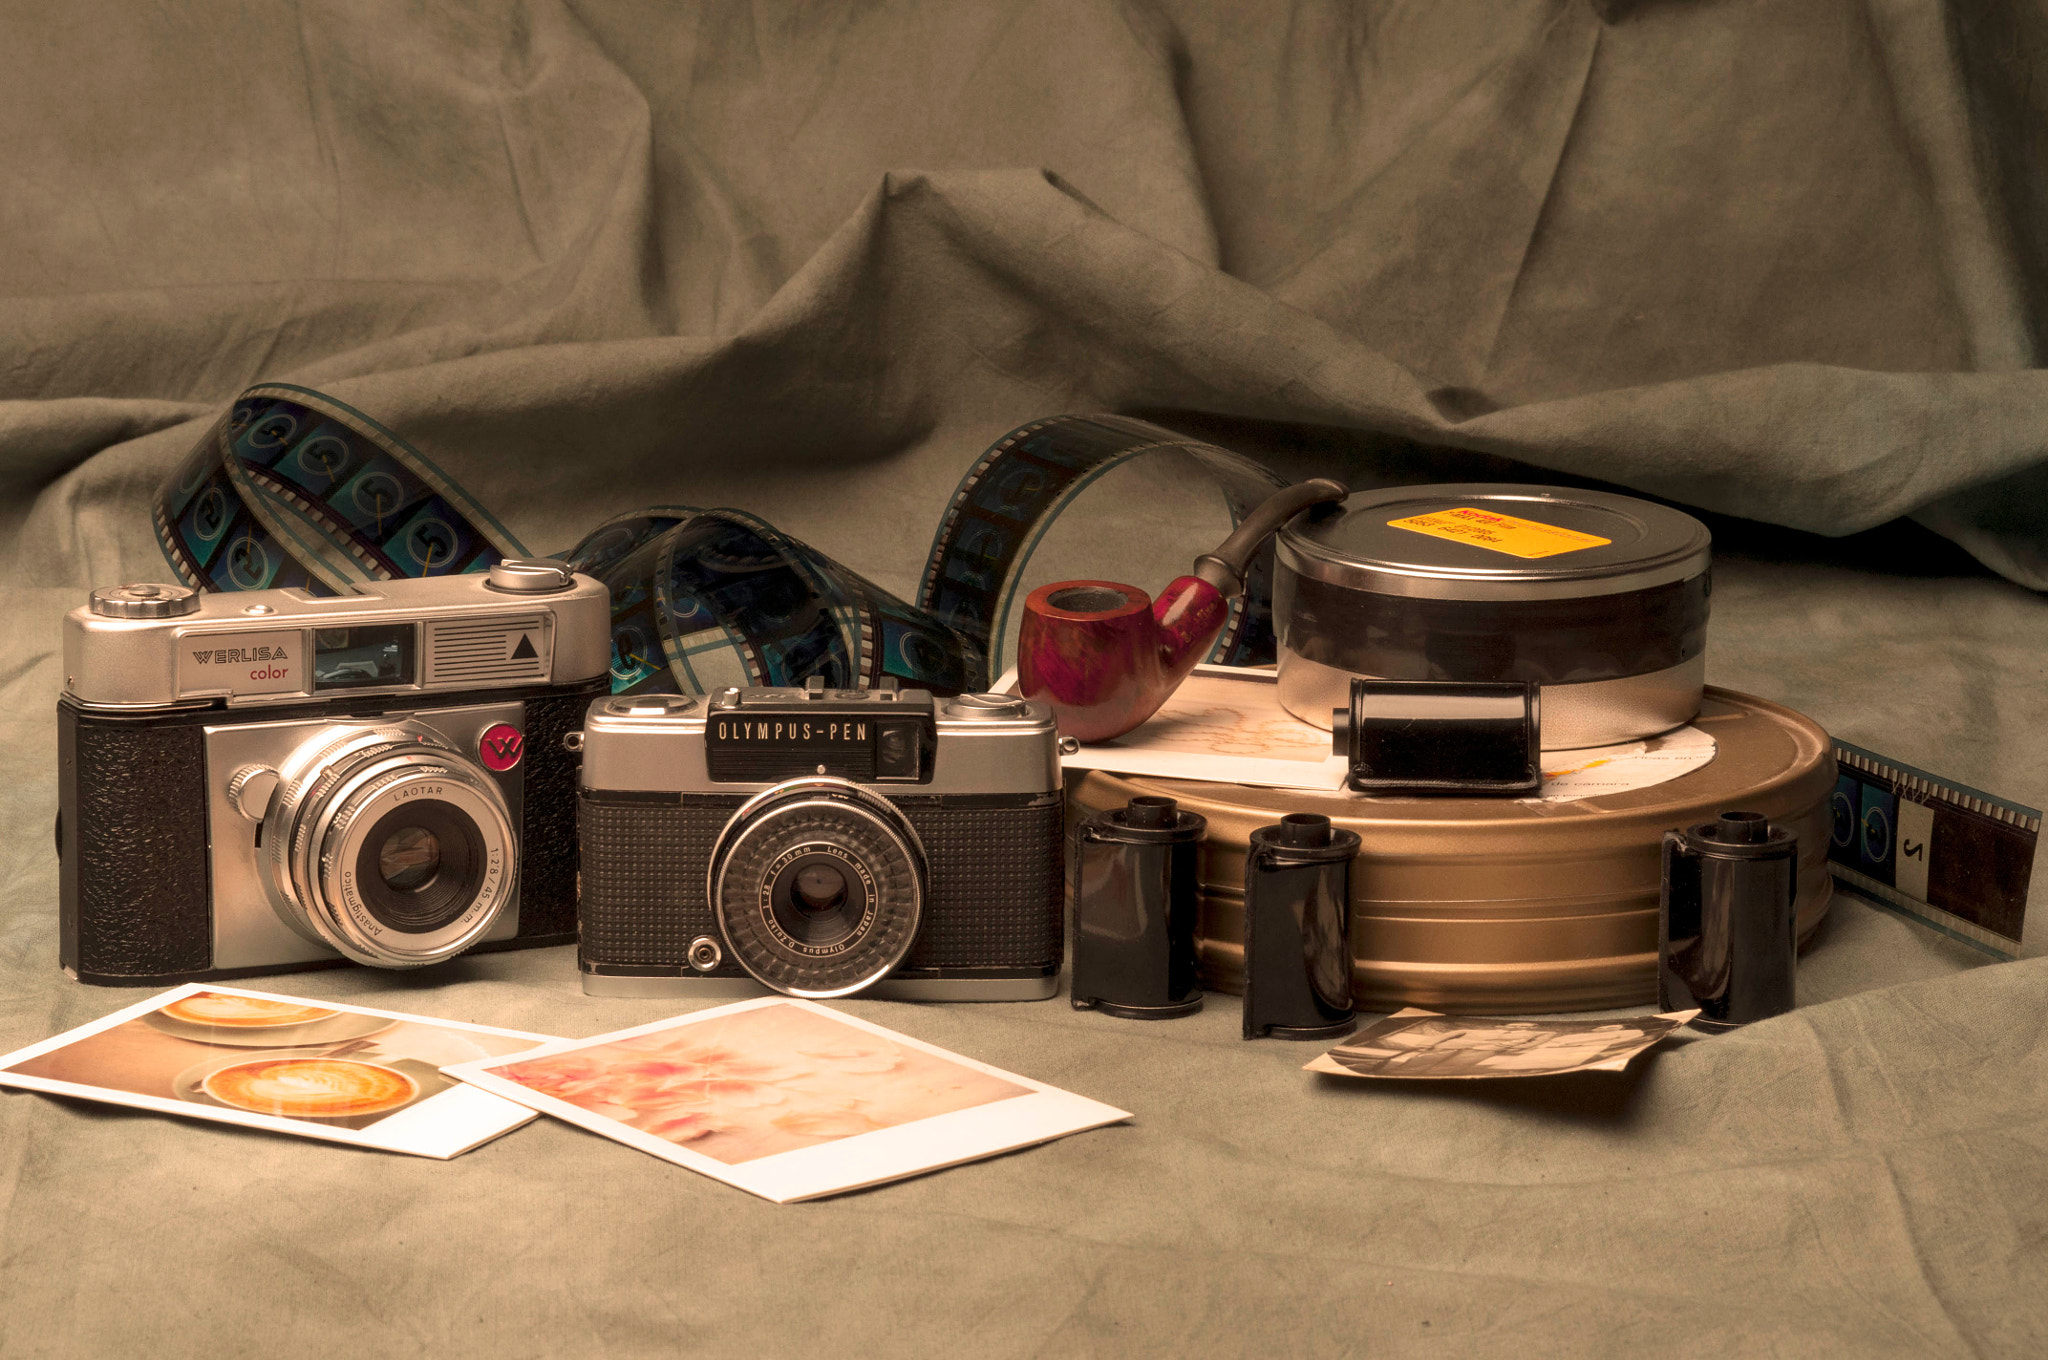 Nikon D90 + AF Zoom-Nikkor 35-105mm f/3.5-4.5D sample photo. Bodegón vintage photography